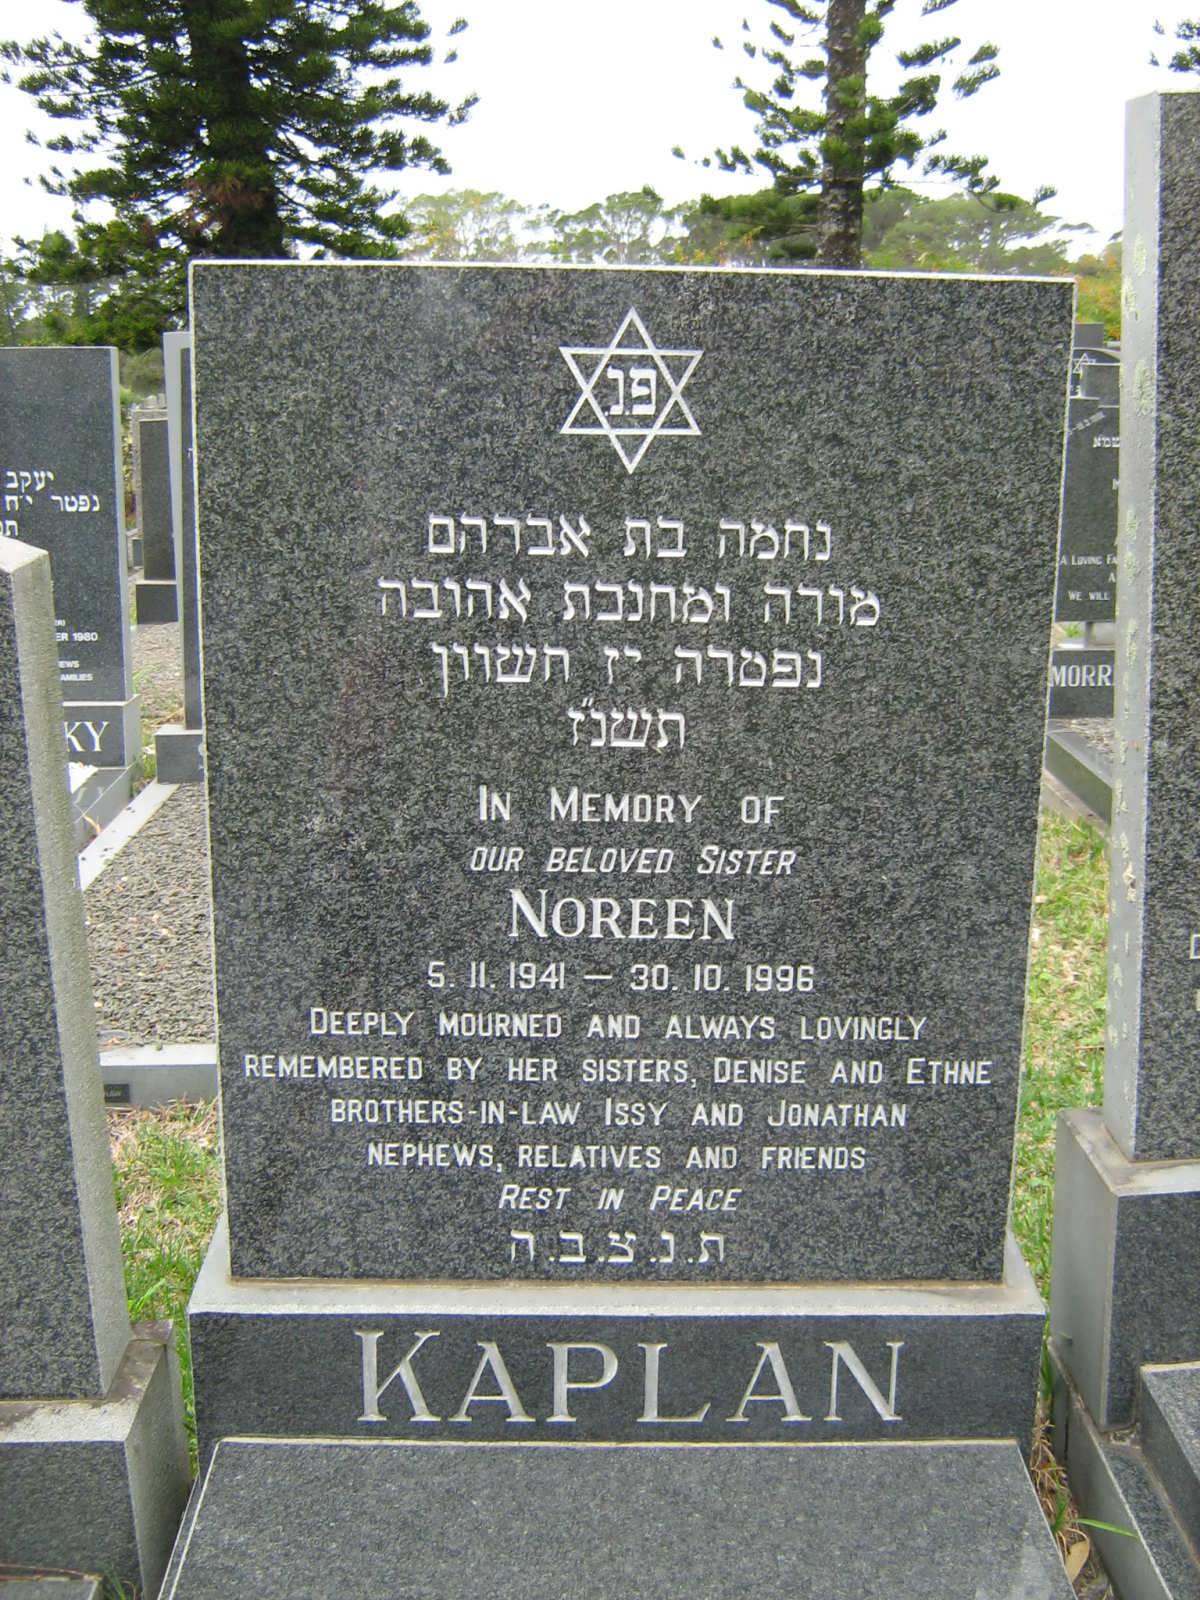 KAPLAN Noreen 1941-1996